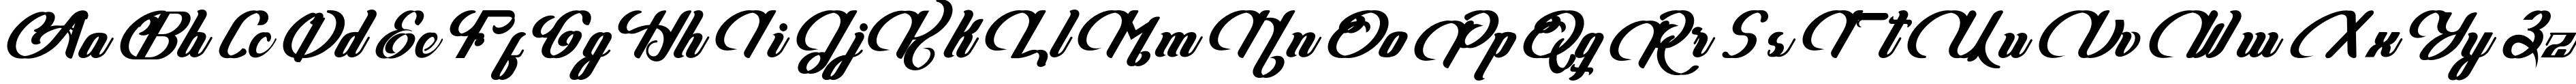 Пример написания английского алфавита шрифтом Ghea Adasta Regular